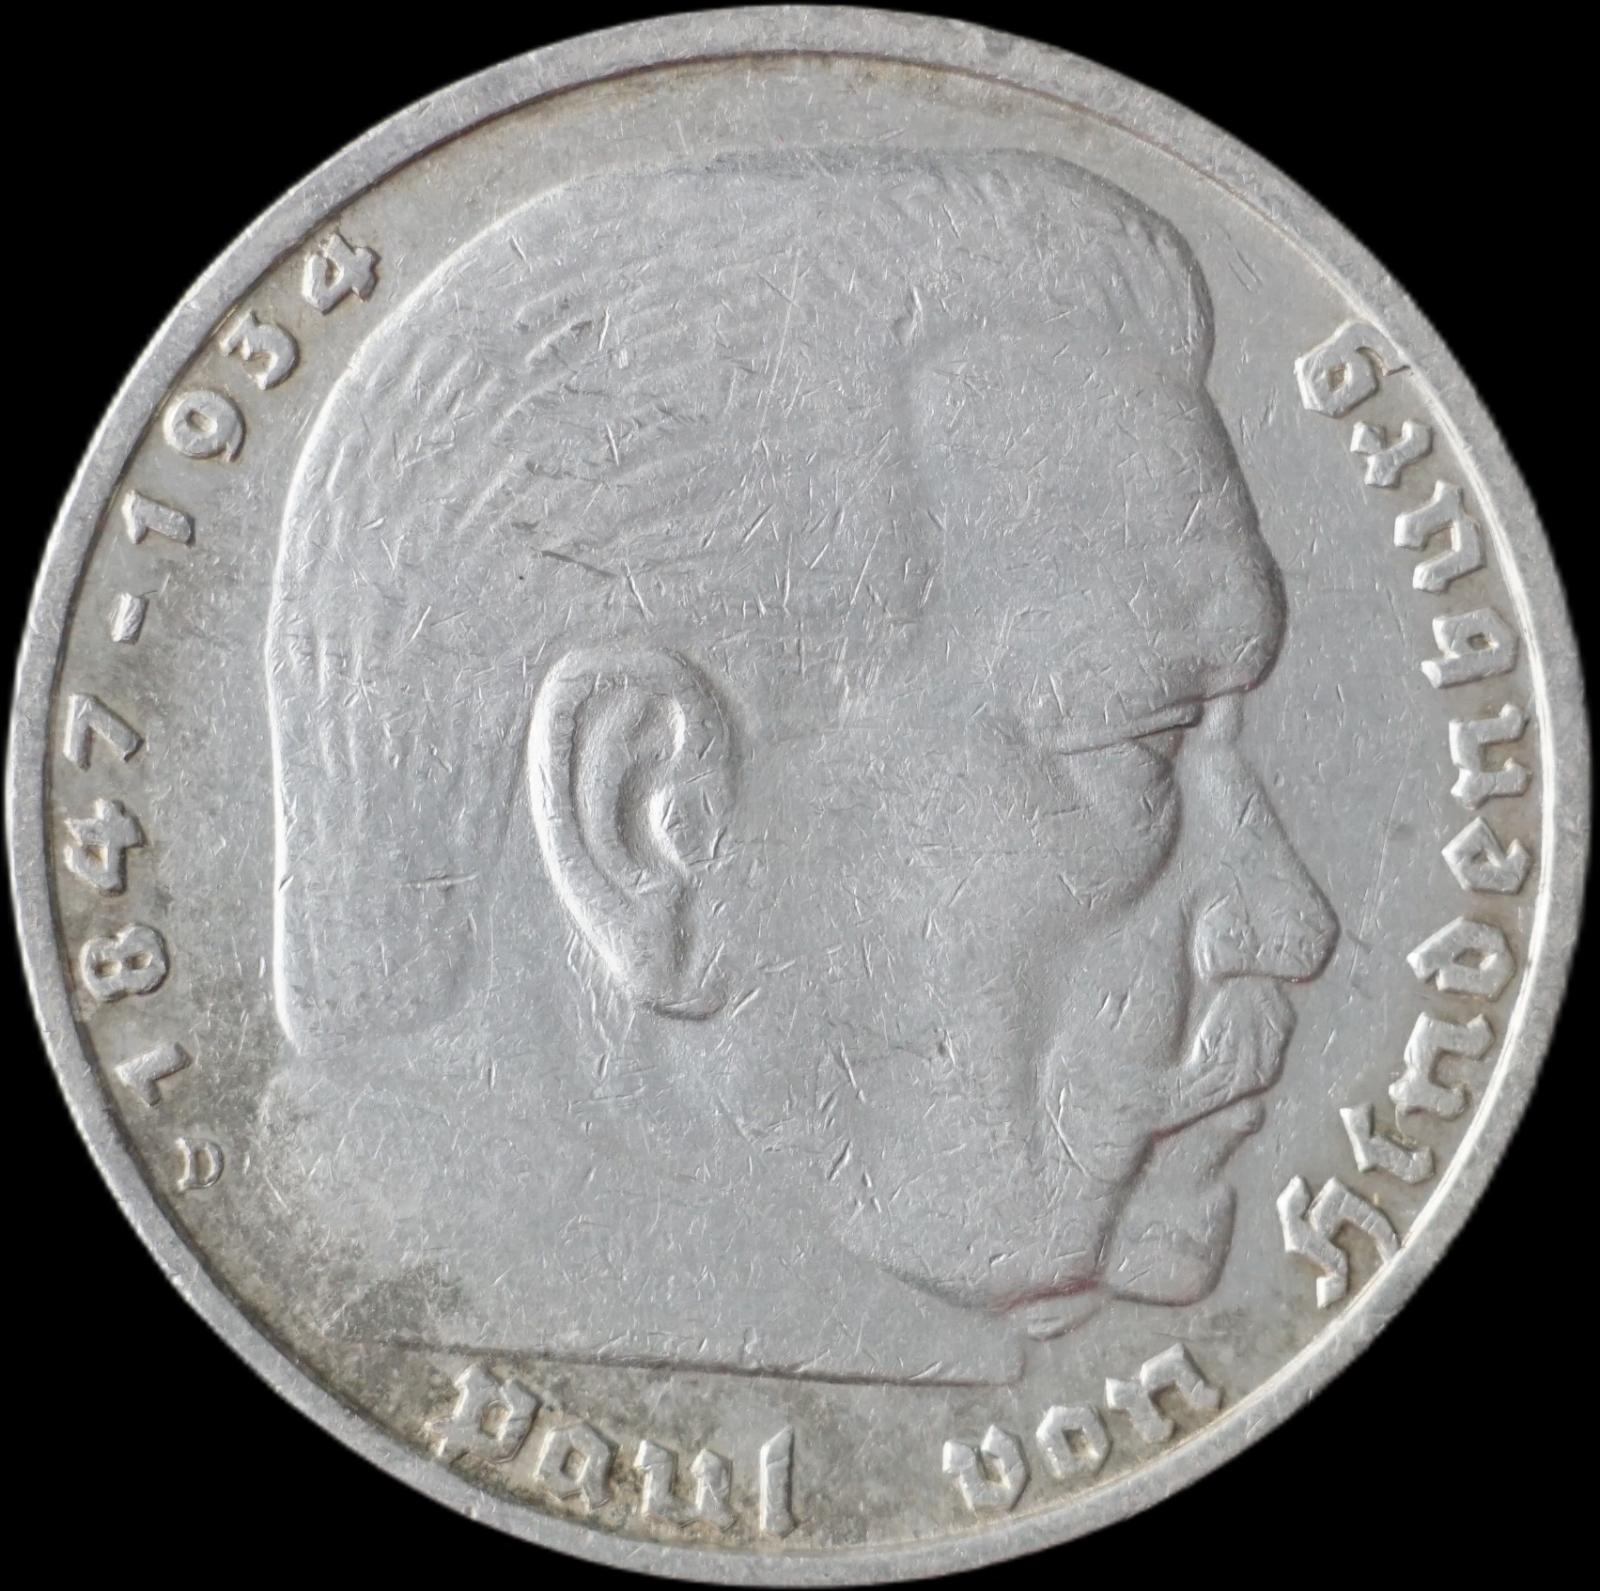 Nemecko - 5 Marka 1935 D Hindenburg - strieborná minca - Numizmatika